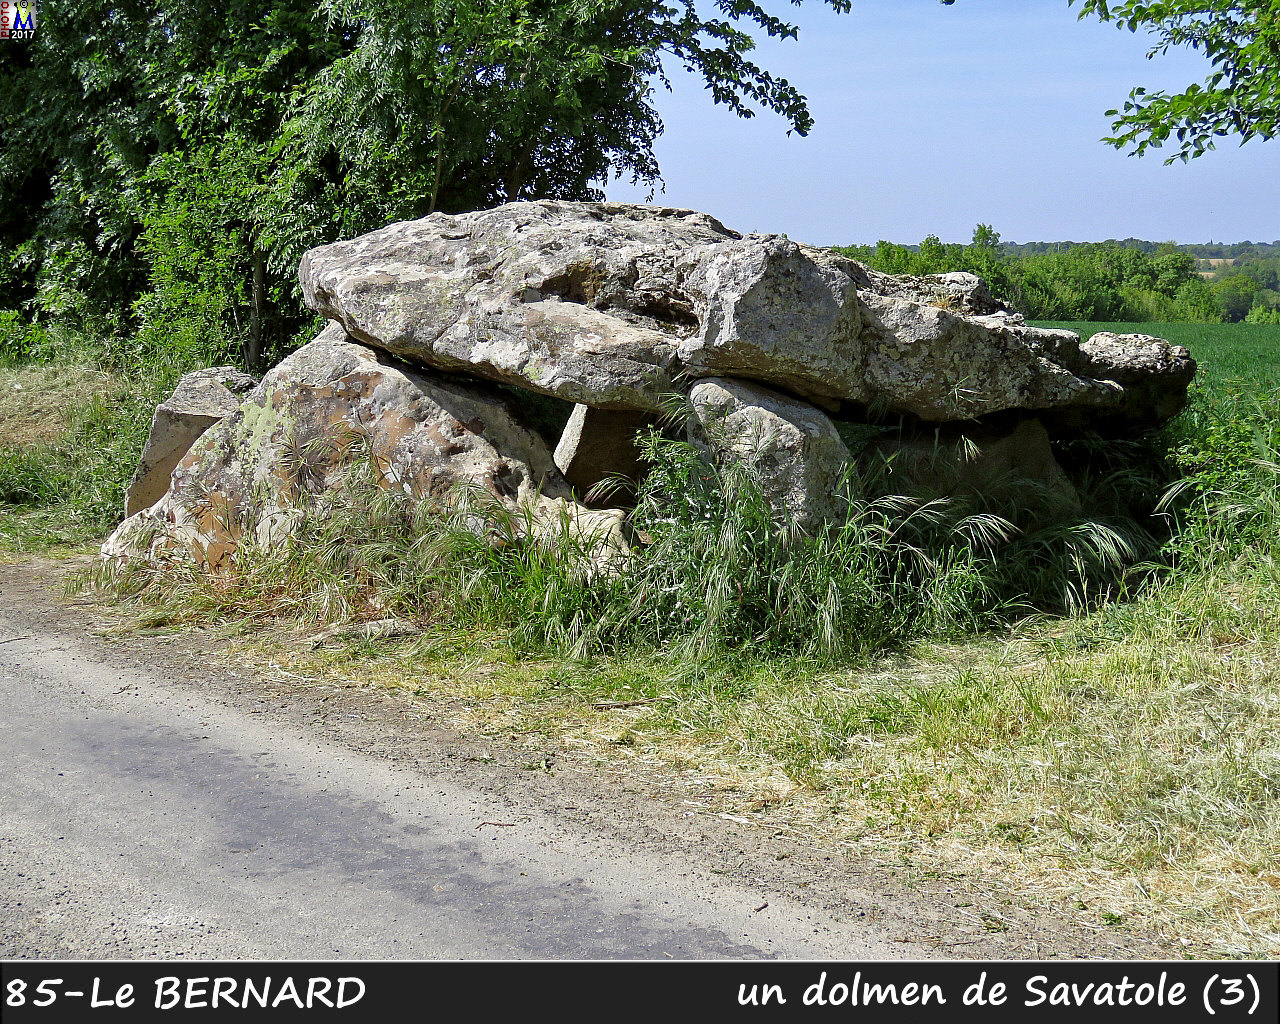 85BERNARD_dolmen_1120.jpg